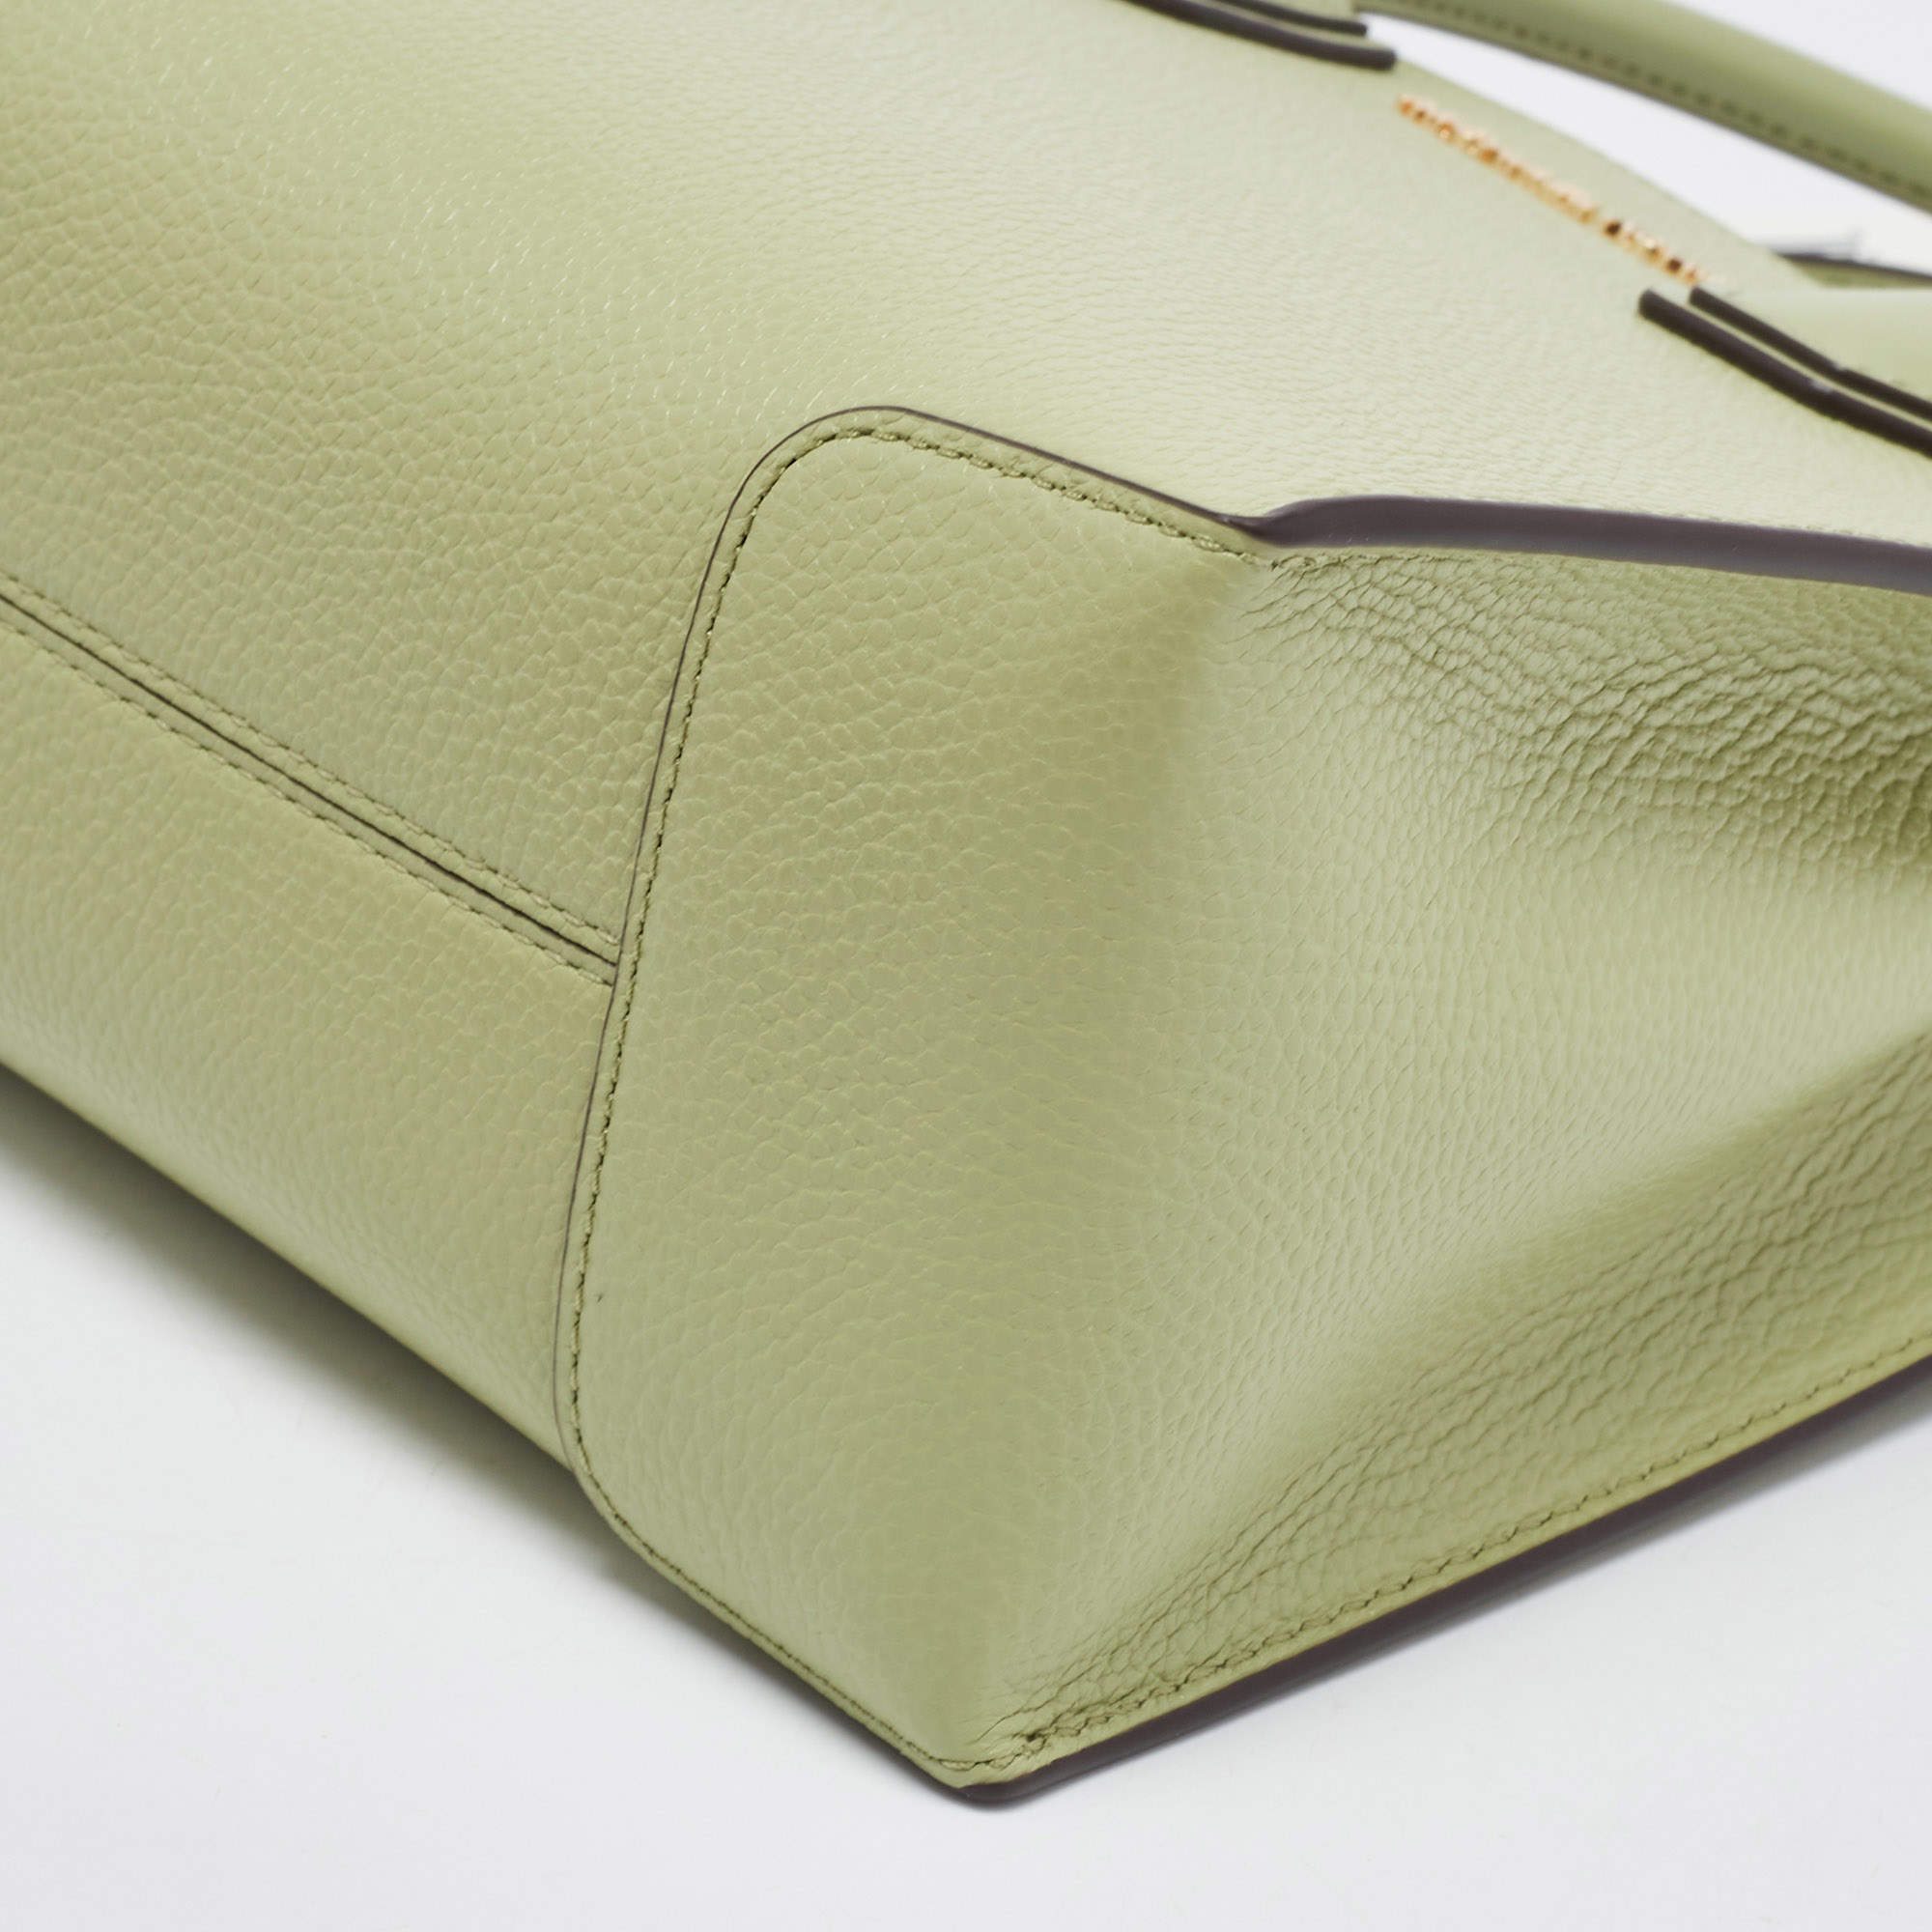 Mercer leather handbag Michael Kors Green in Leather - 19649054